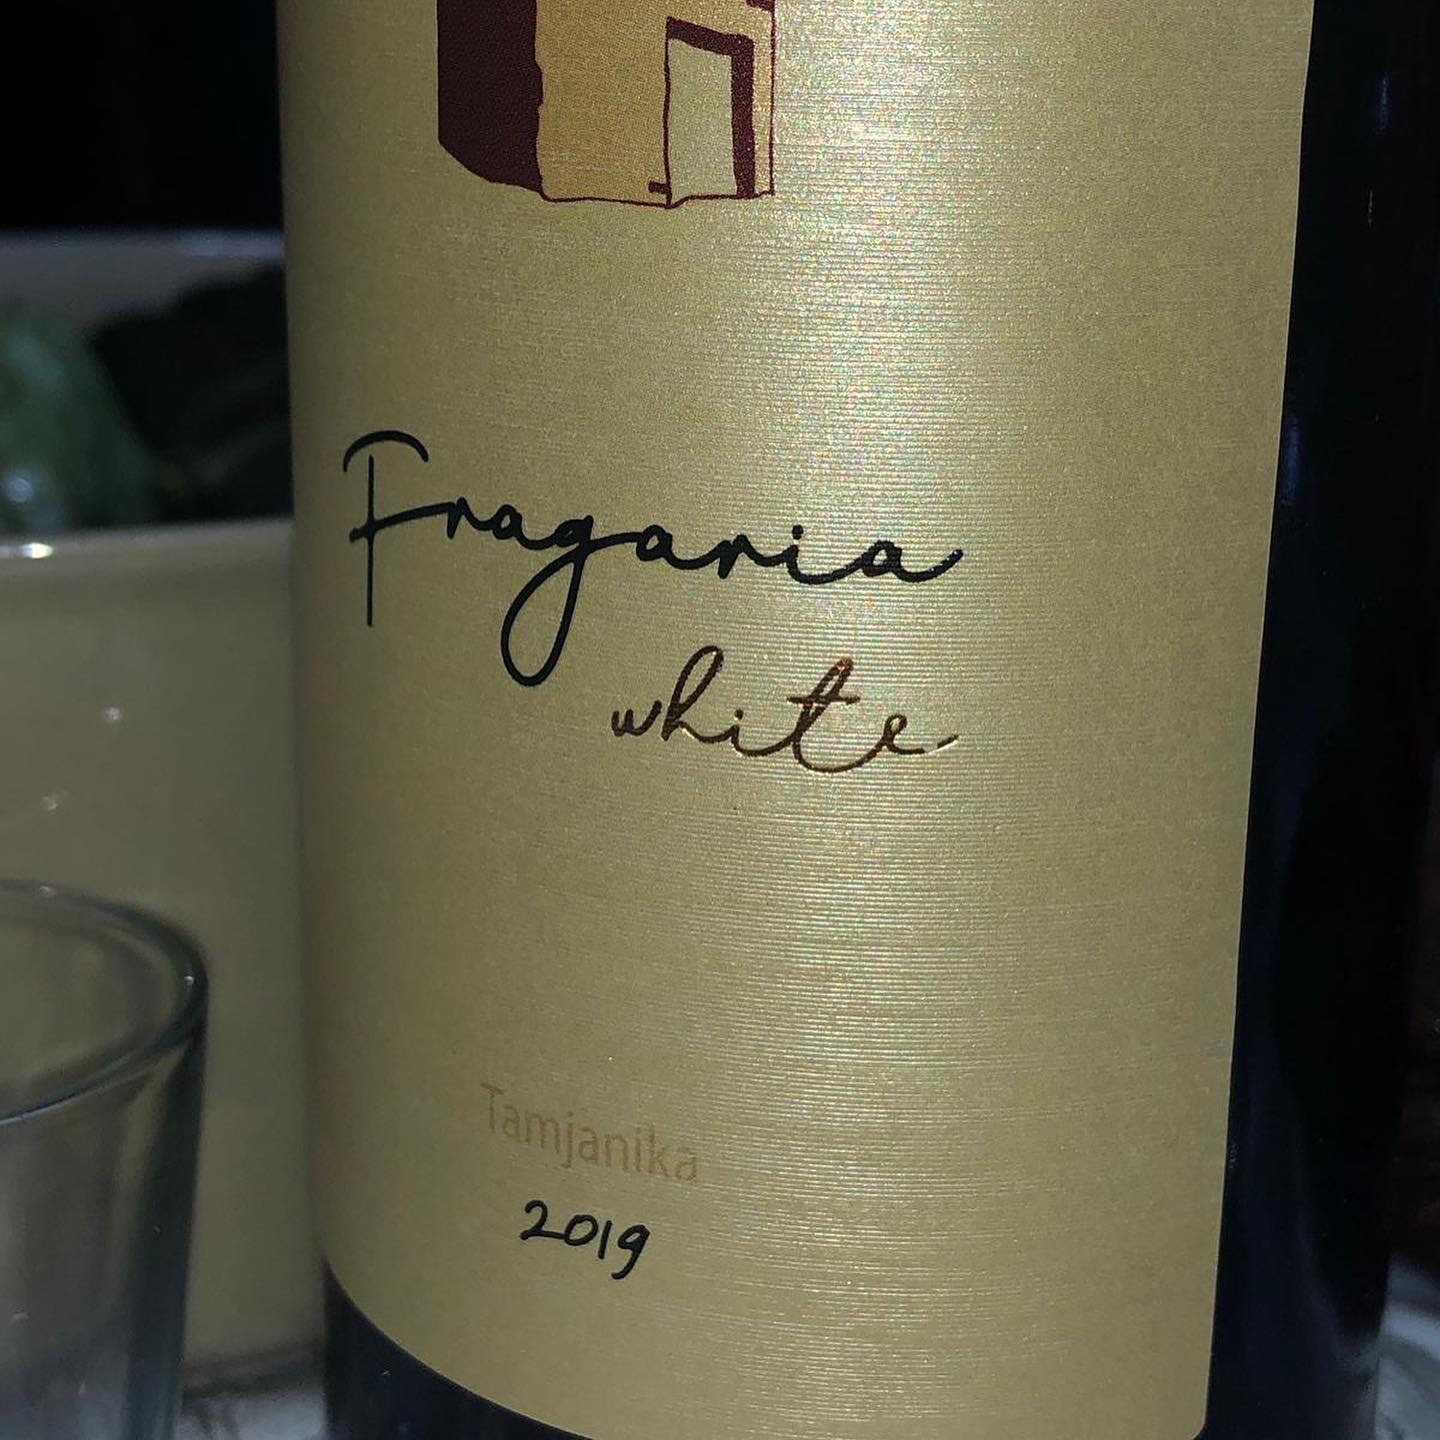 fragaria-white-tamjanika